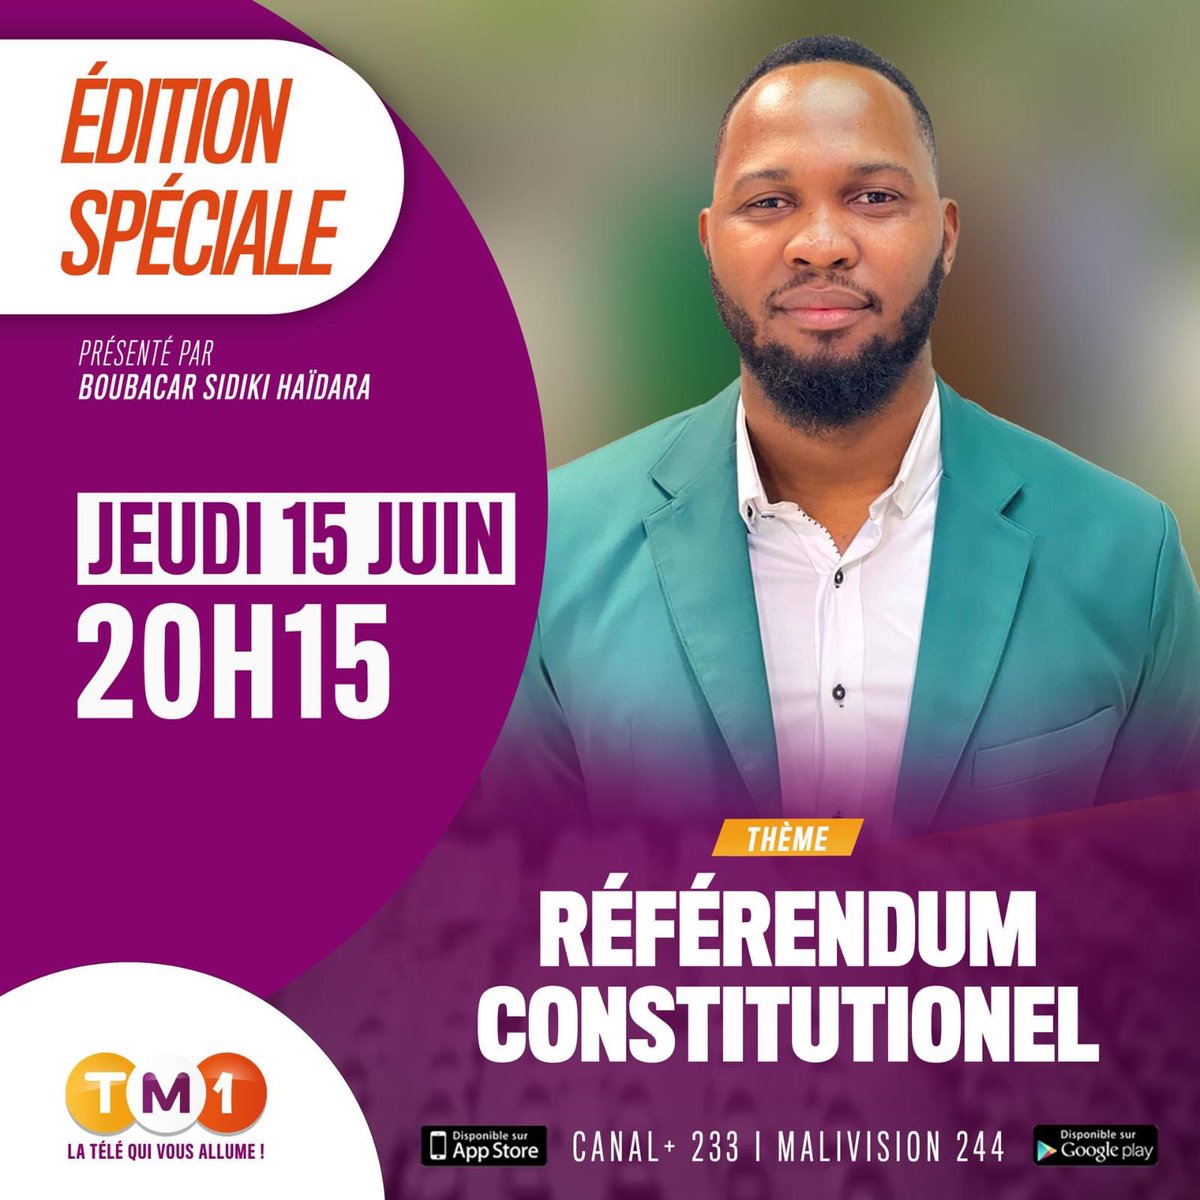 Ce soir à 20h15, TM1 vous propose une édition spéciale consacrée au référendum constitutionnel qui se tiendra ce dimanche 18 juin. Autour de Boubacar Sidiki Haidara , des partisans du Oui et du Non se retrouveront pour débattre sur les enjeux du scrutin.